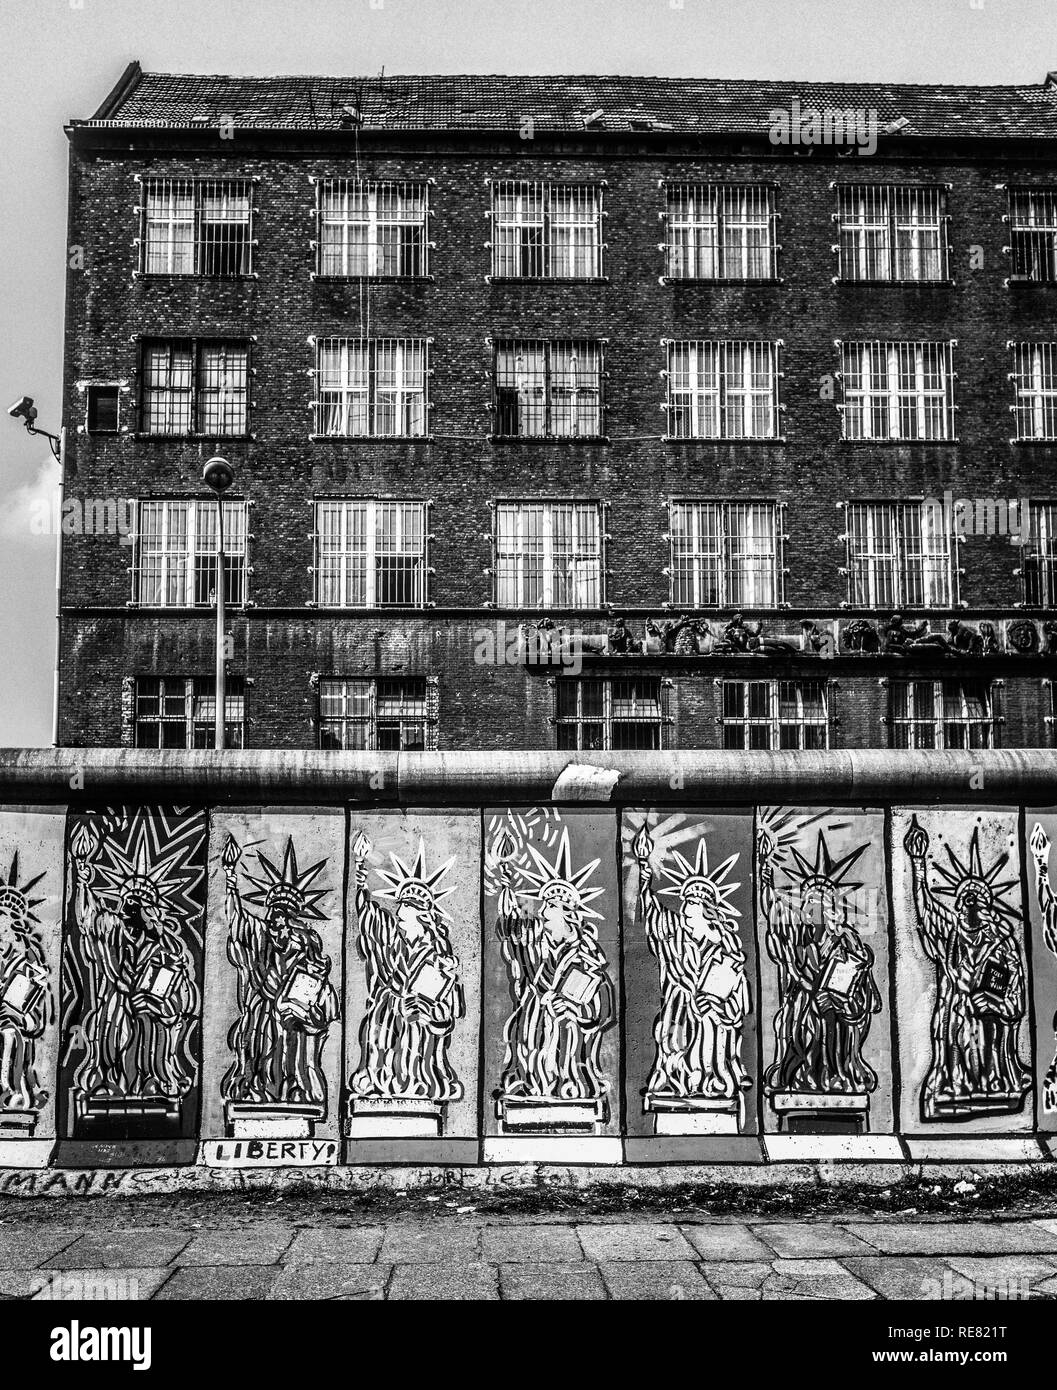 Agosto 1986, il muro di Berlino, la Statua della Libertà affreschi, lato occidentale, Berlino Est edifici, Zimmerstrasse street, Berlino Ovest lato, Germania, Europa Foto Stock